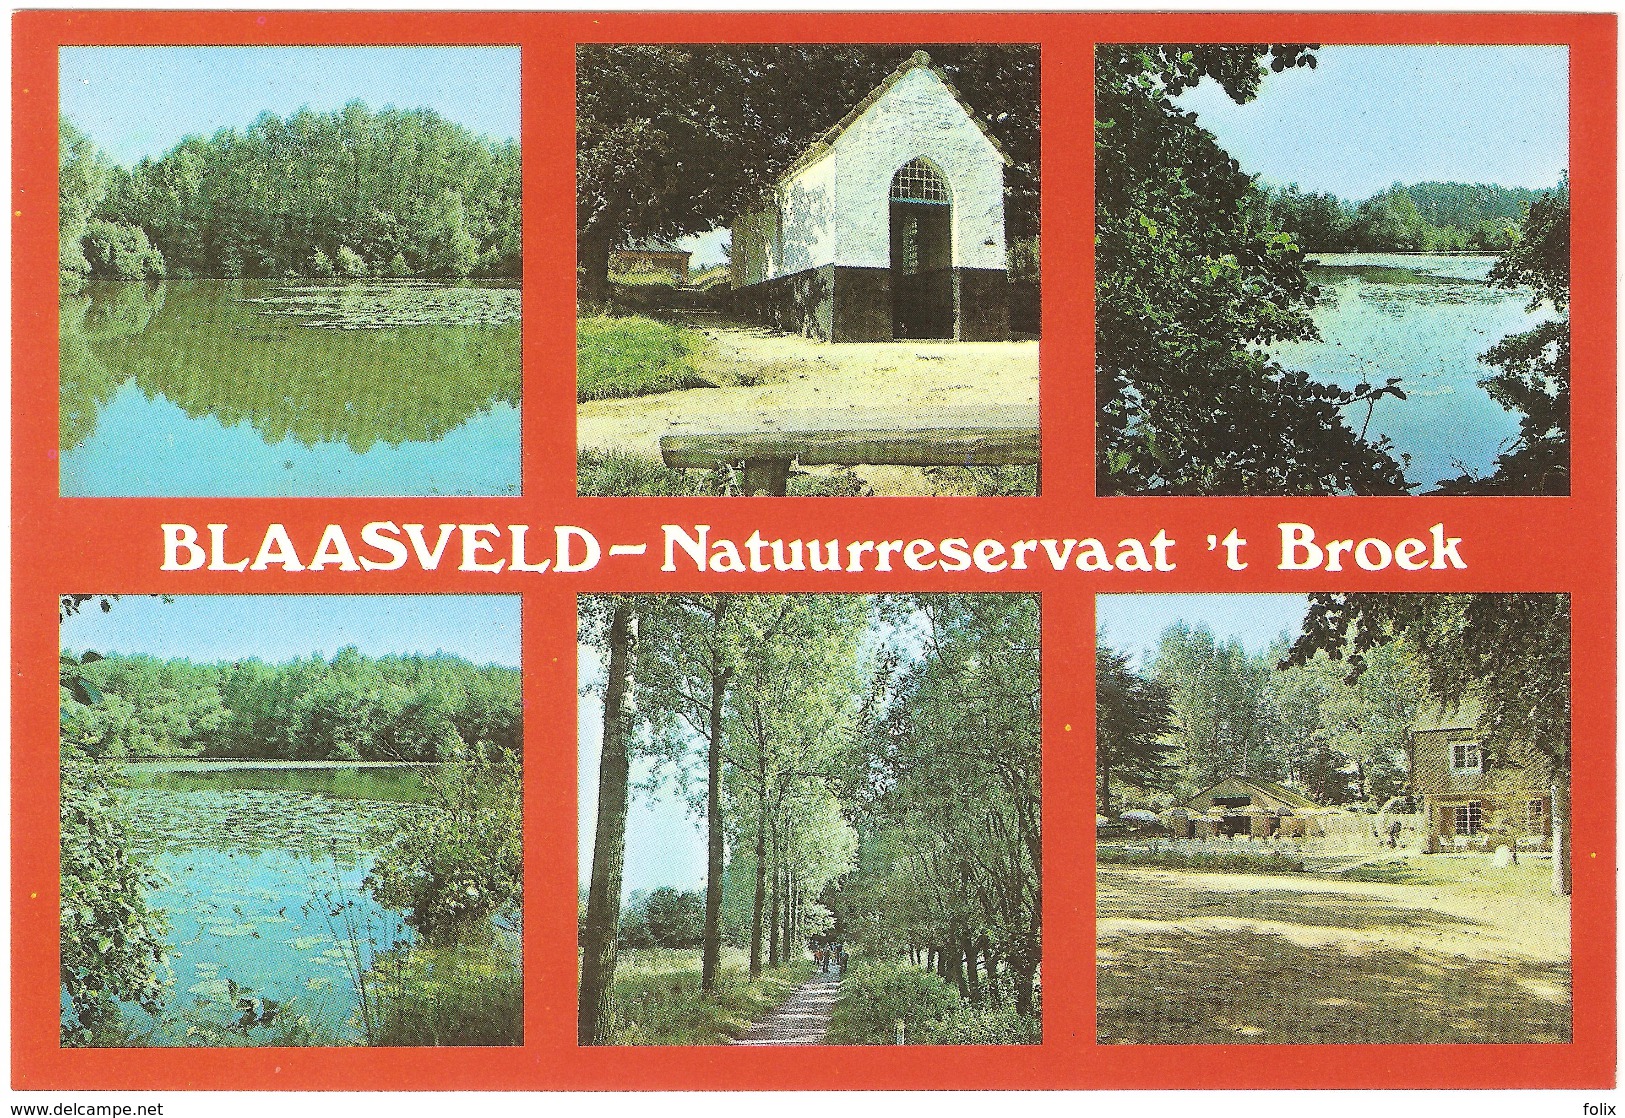 Blaasveld - Natuurreservaat 't Broek - Willebrök